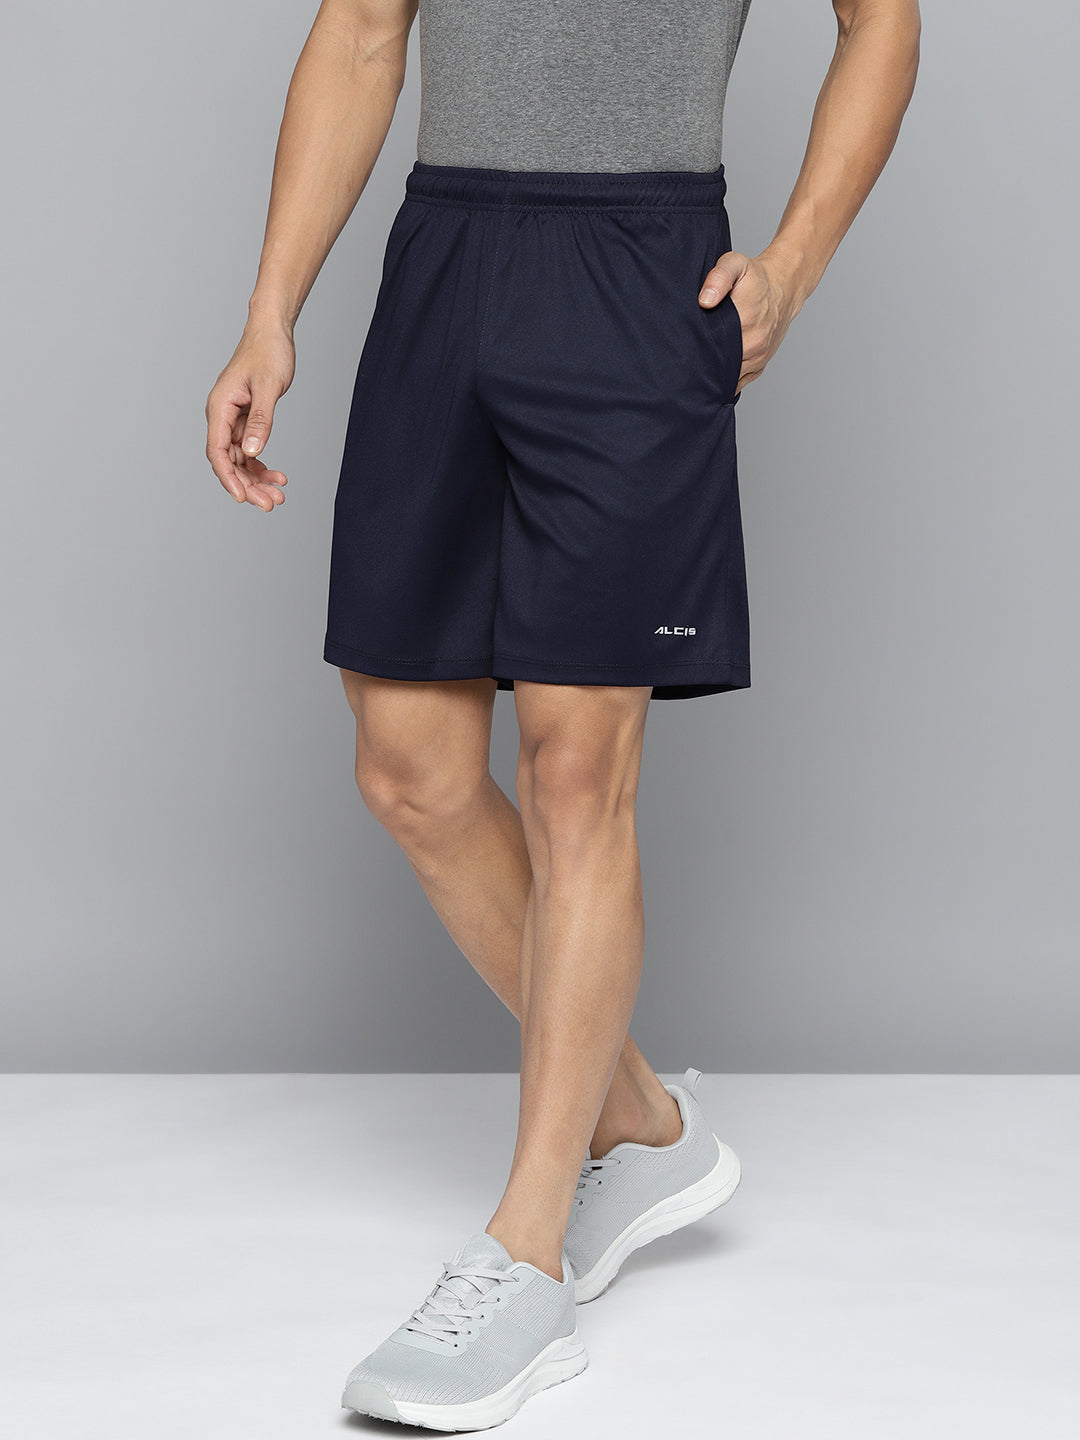 Alcis Men Navy Blue Solid Slim Fit Running Sports Shorts